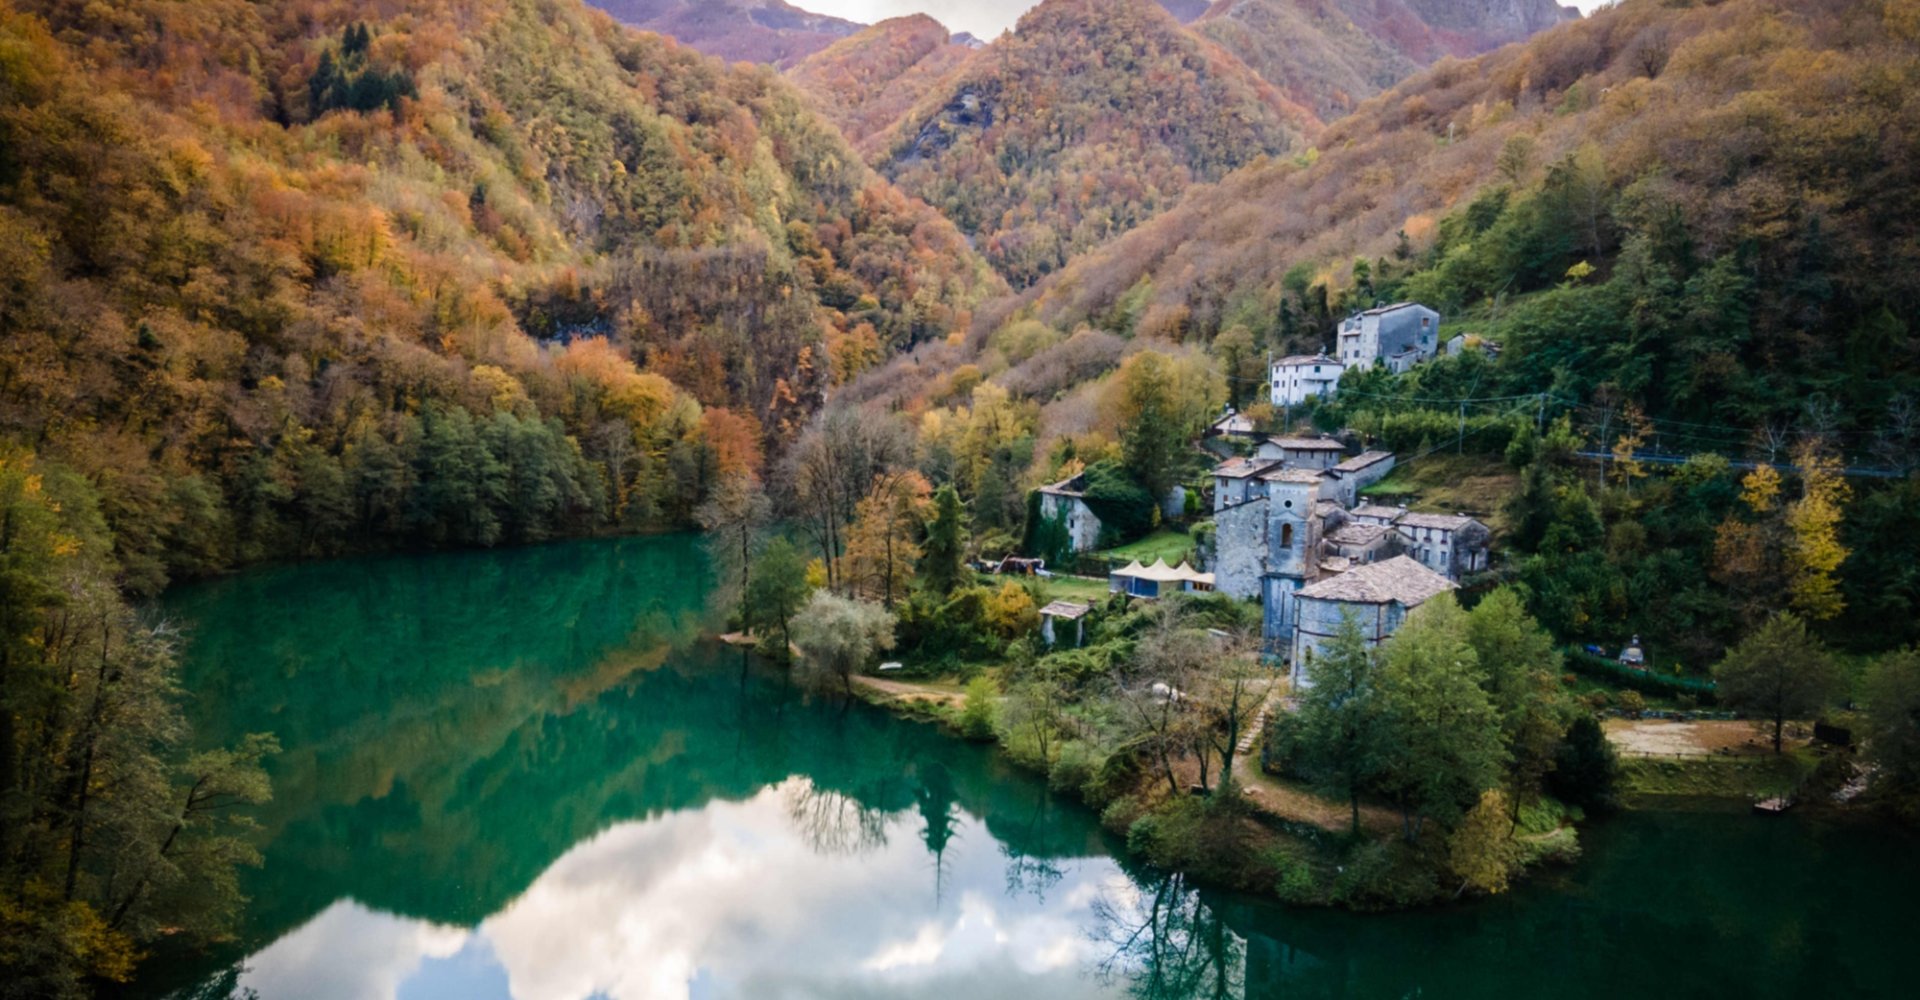 Pequeña aldea con vista a un lago y rodeada de montañas.